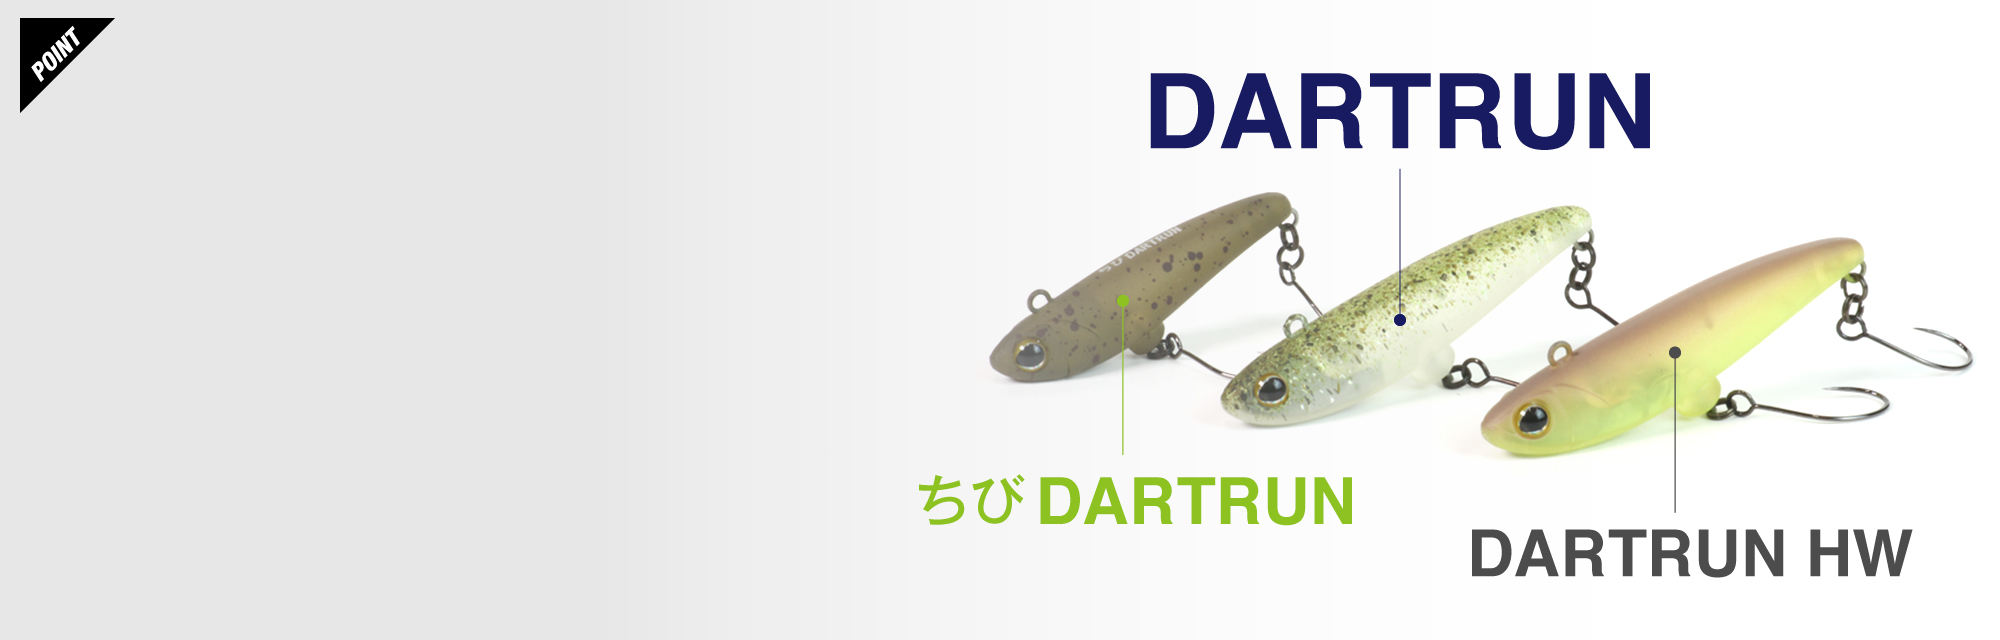 ダートラン DARTRUN / ダートラン 